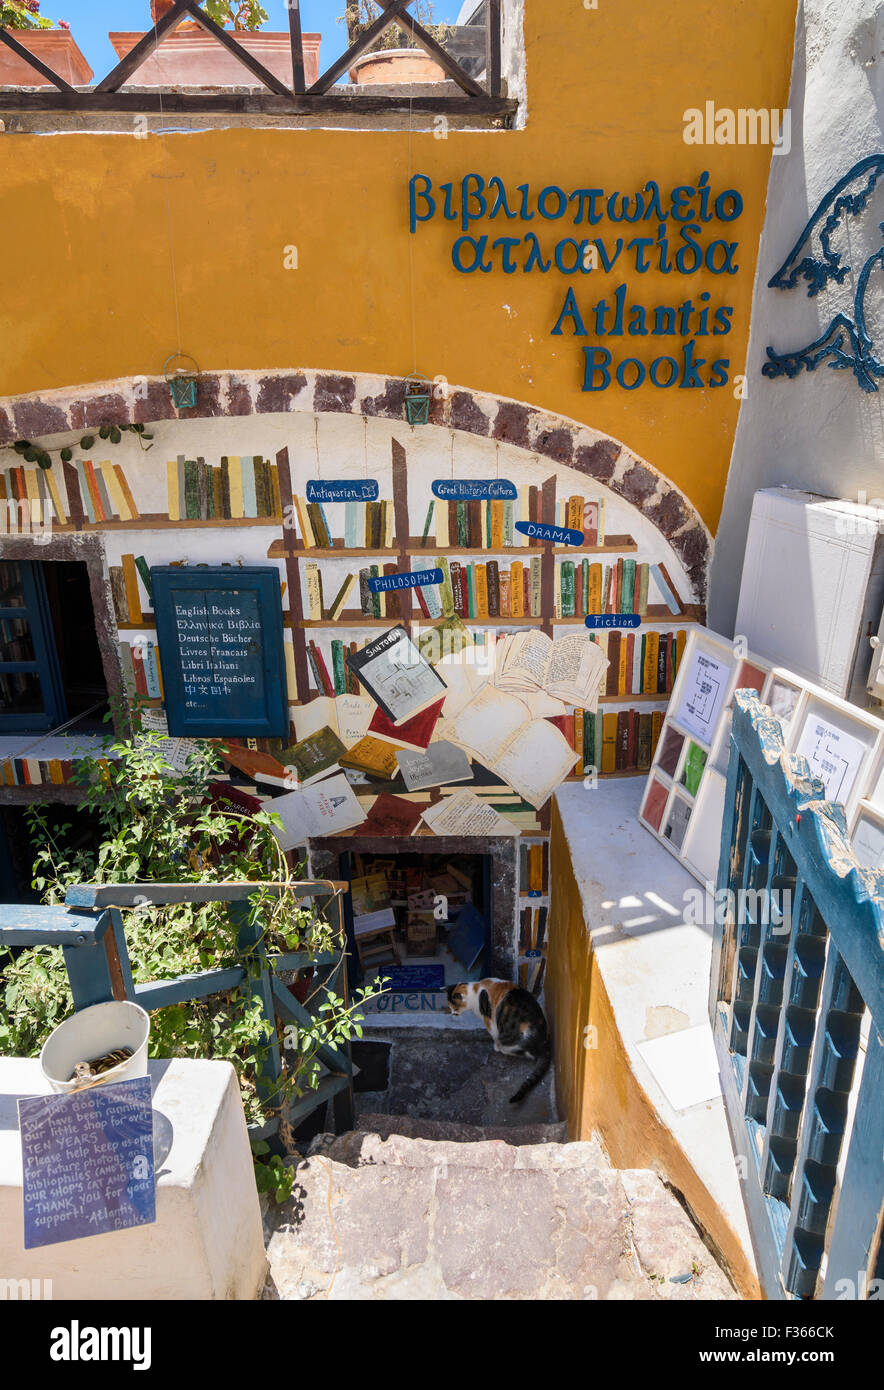 Atlantis Books à Oia, Santorini, Cyclades, Grèce Banque D'Images